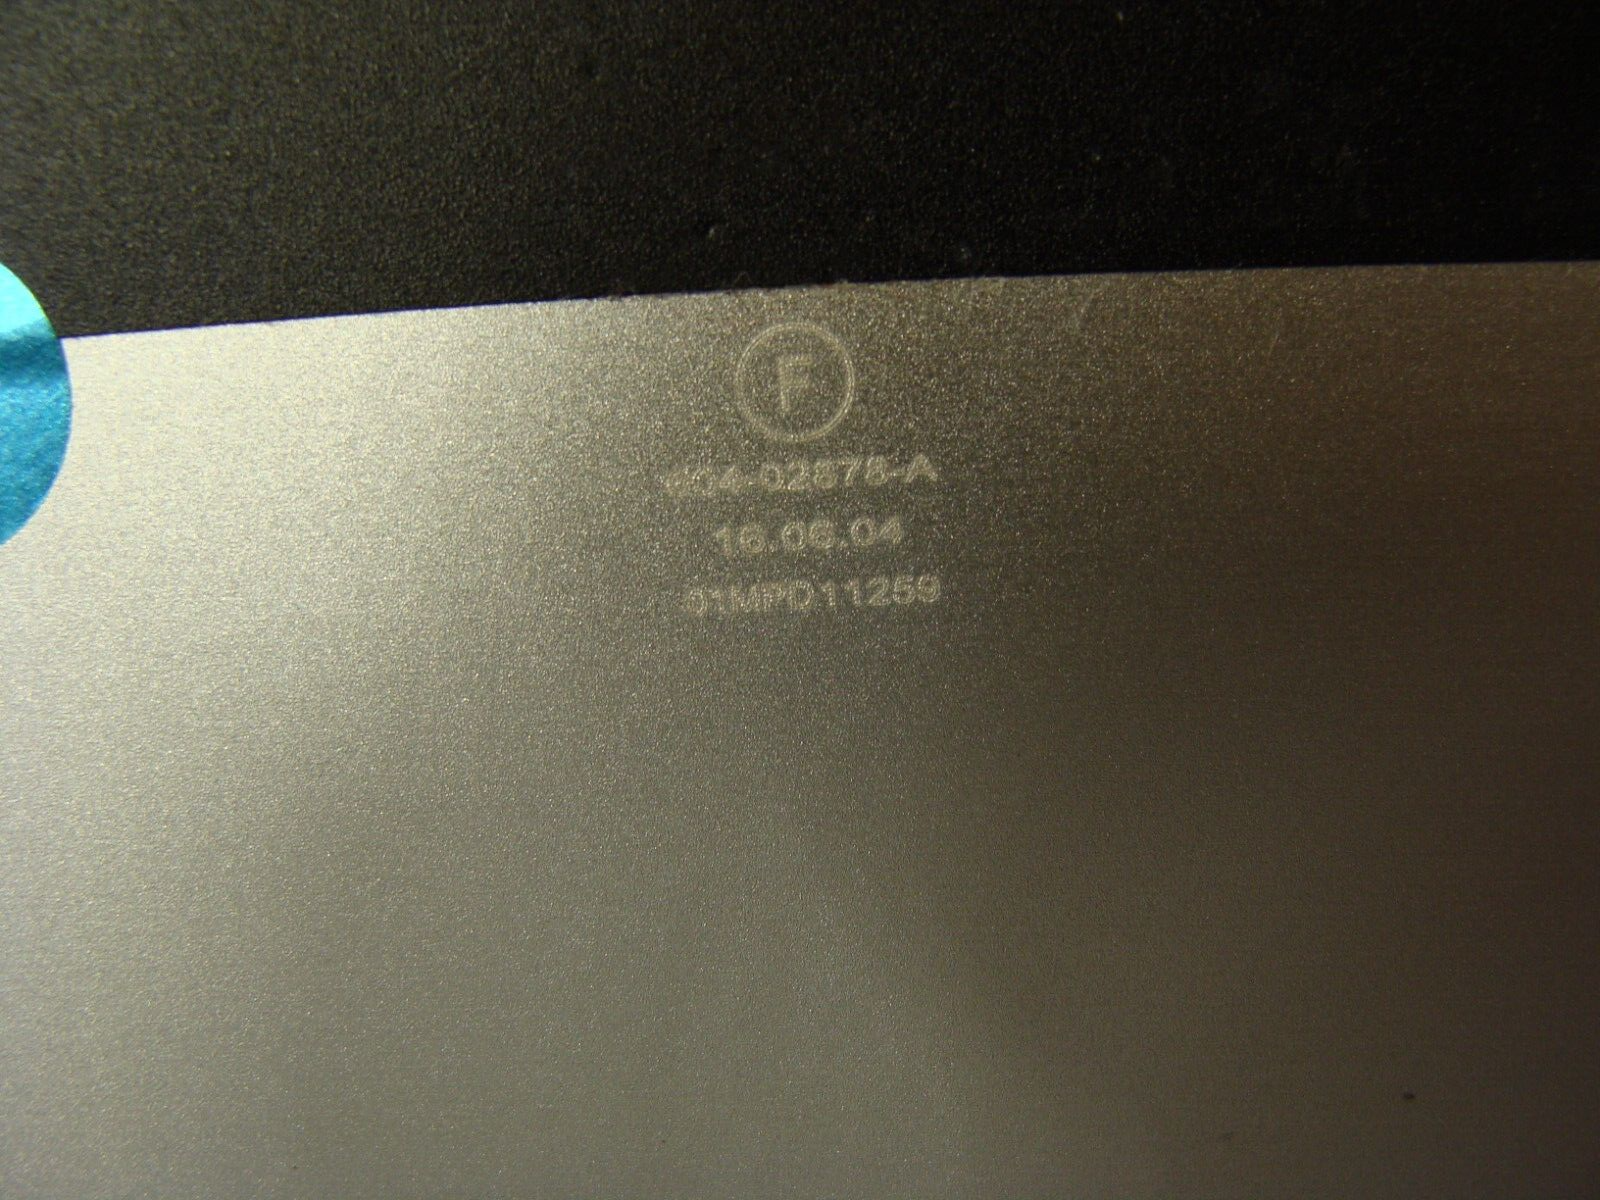 MacBook Pro A1502 2015 13